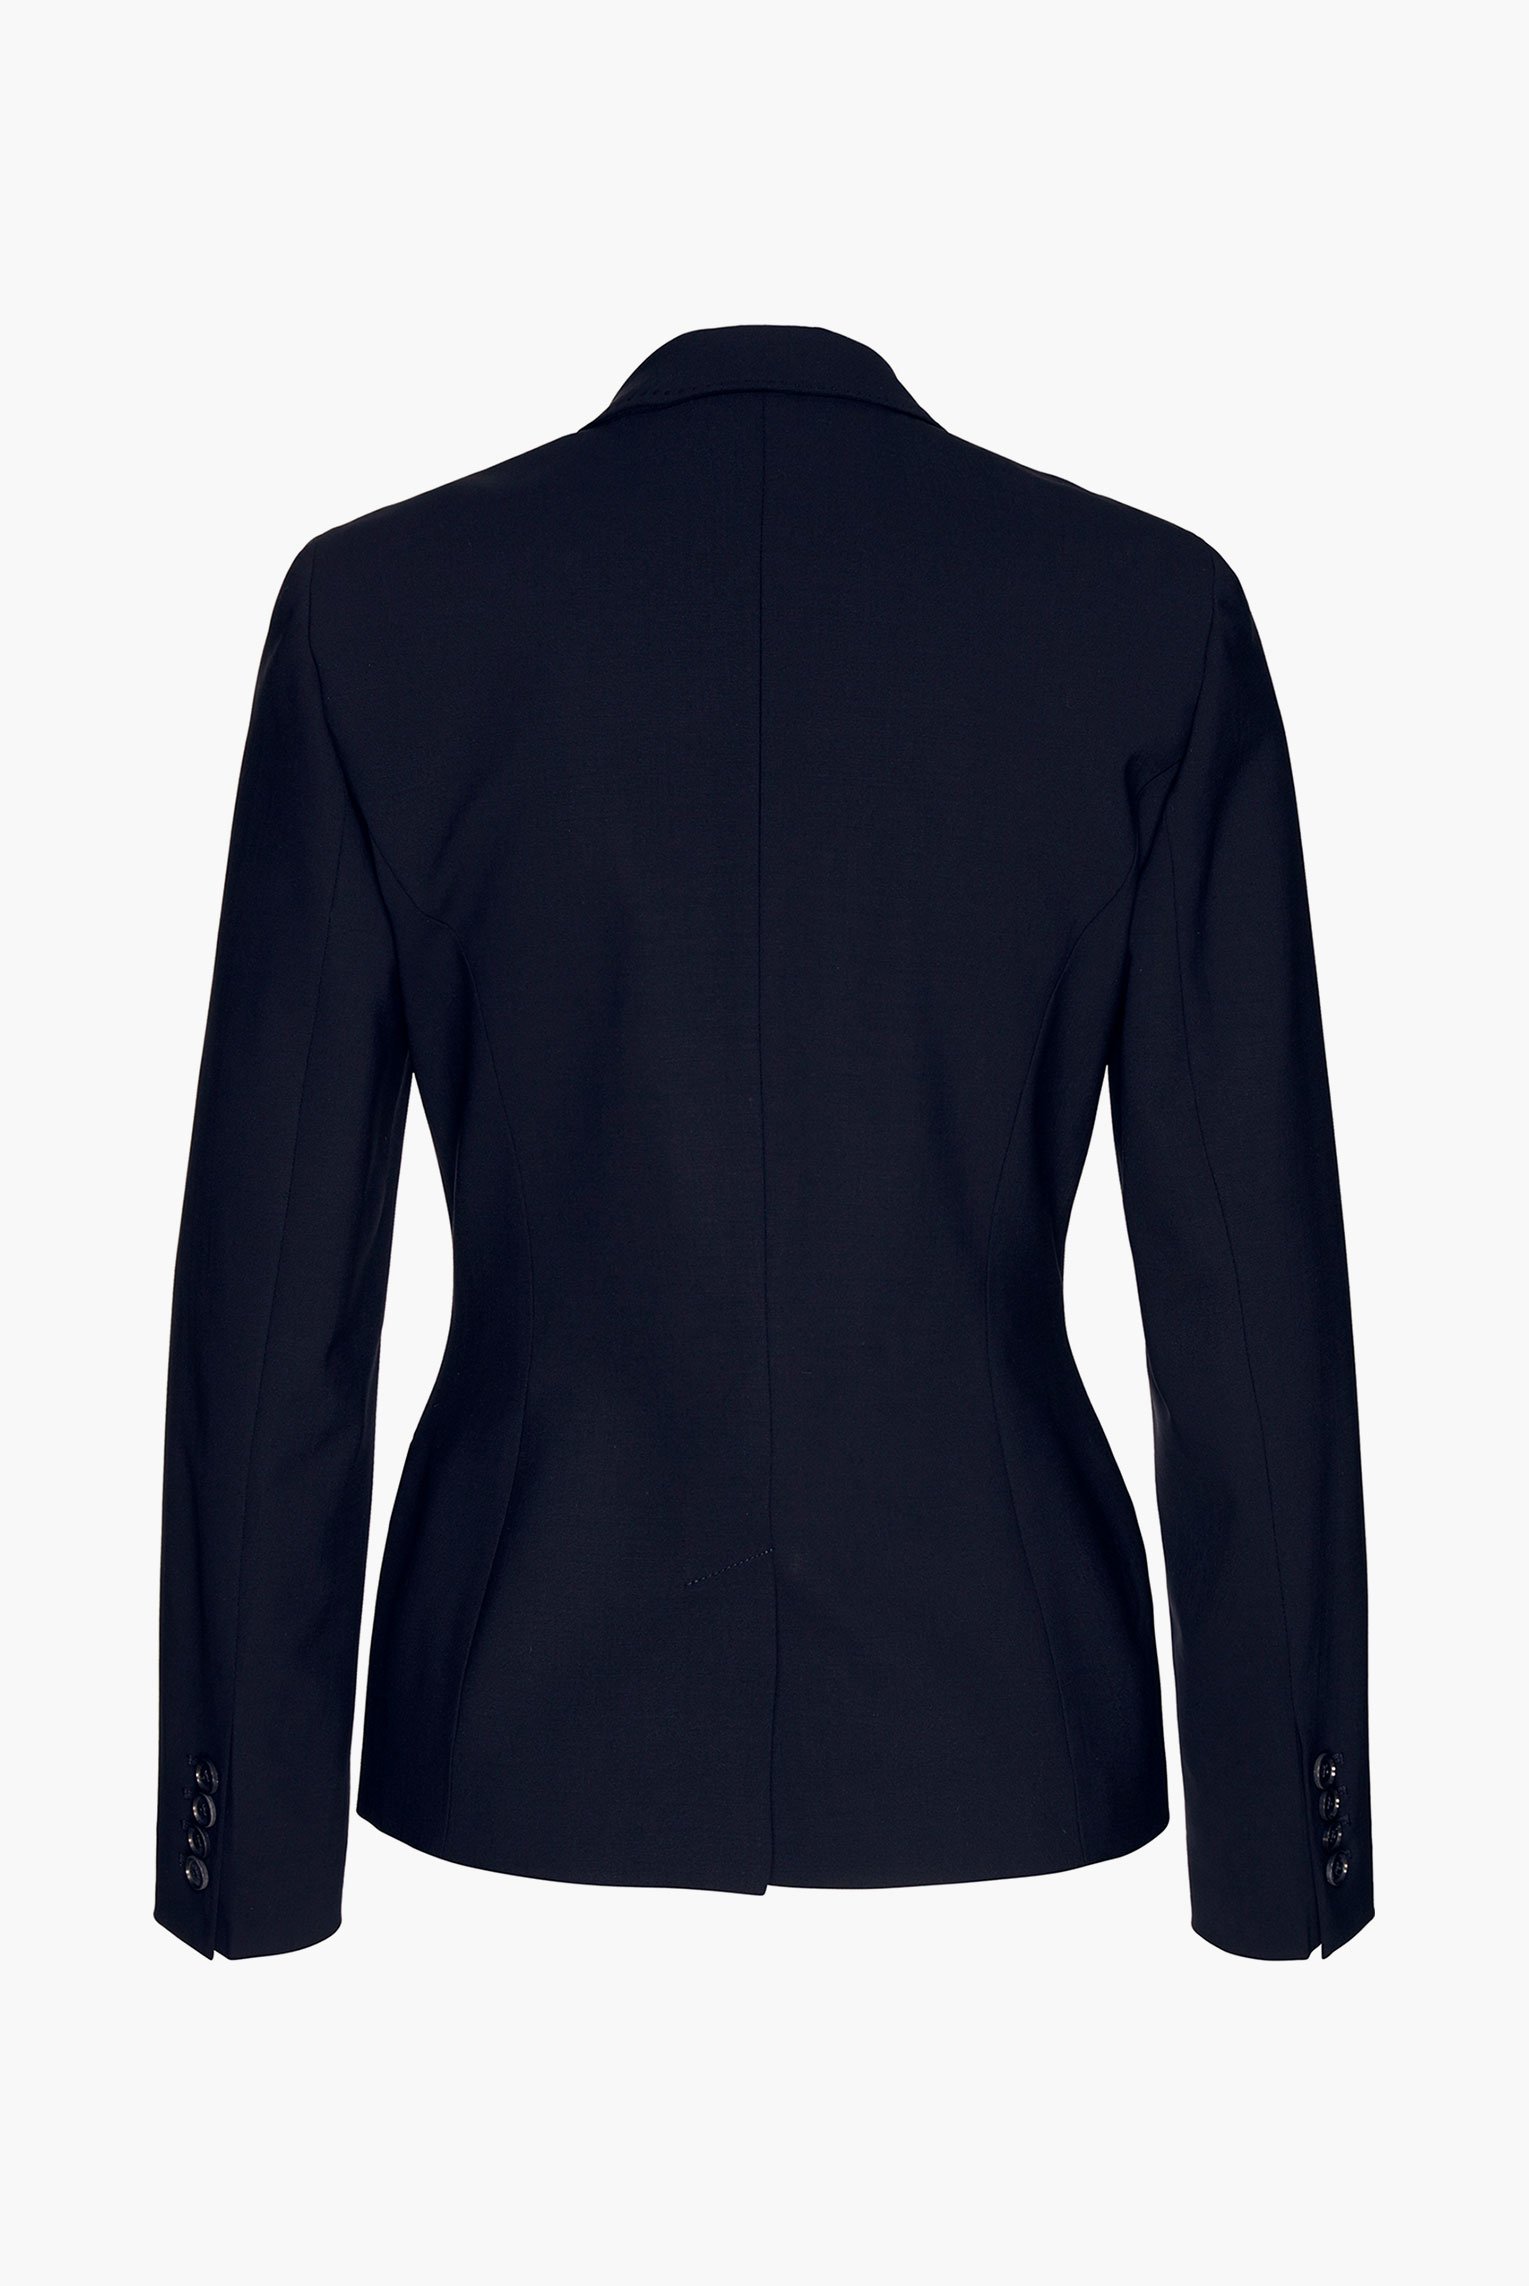 Blazers+Jiny - classic business blazer in wool-stretch+04.6085.07.H00528.790.36